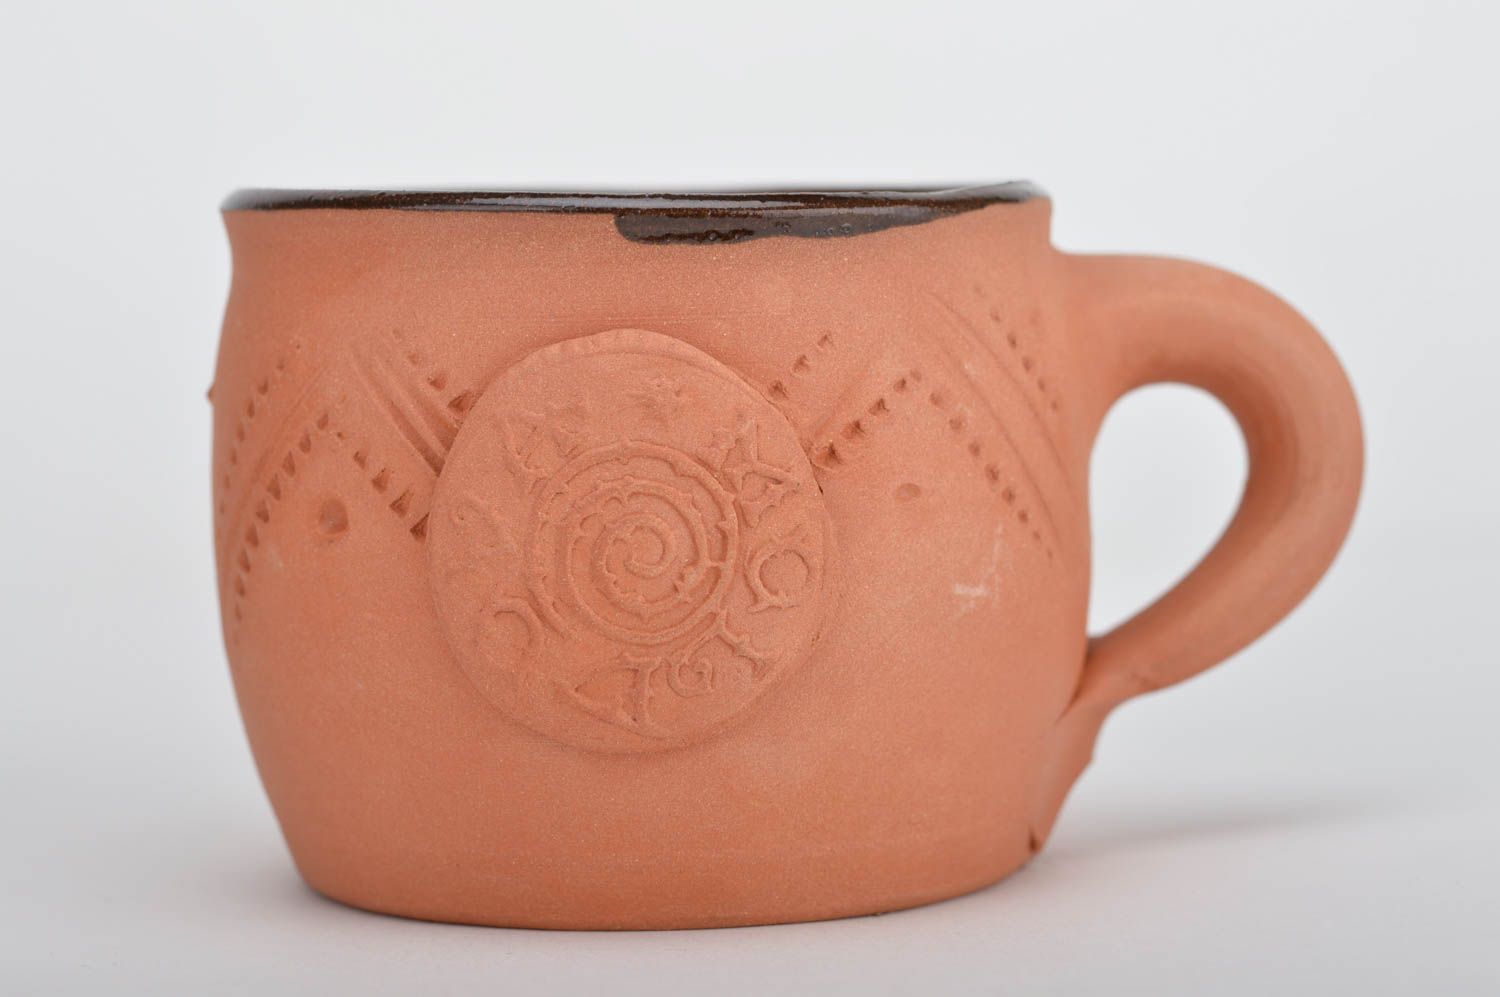 Глиняная чашка небольшая с объемным декором красивая необычная ручная работа фото 1